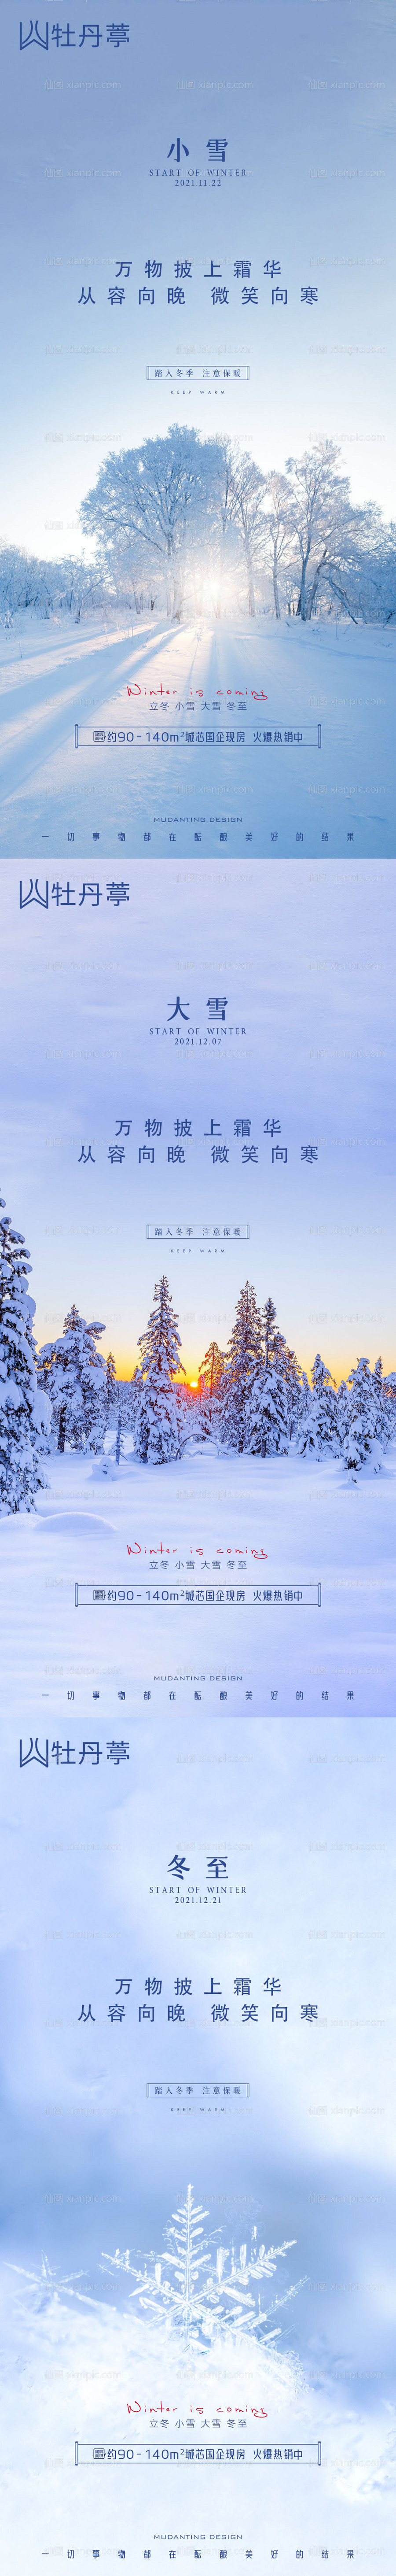 素材乐-立冬小雪大雪冬至节气系列海报